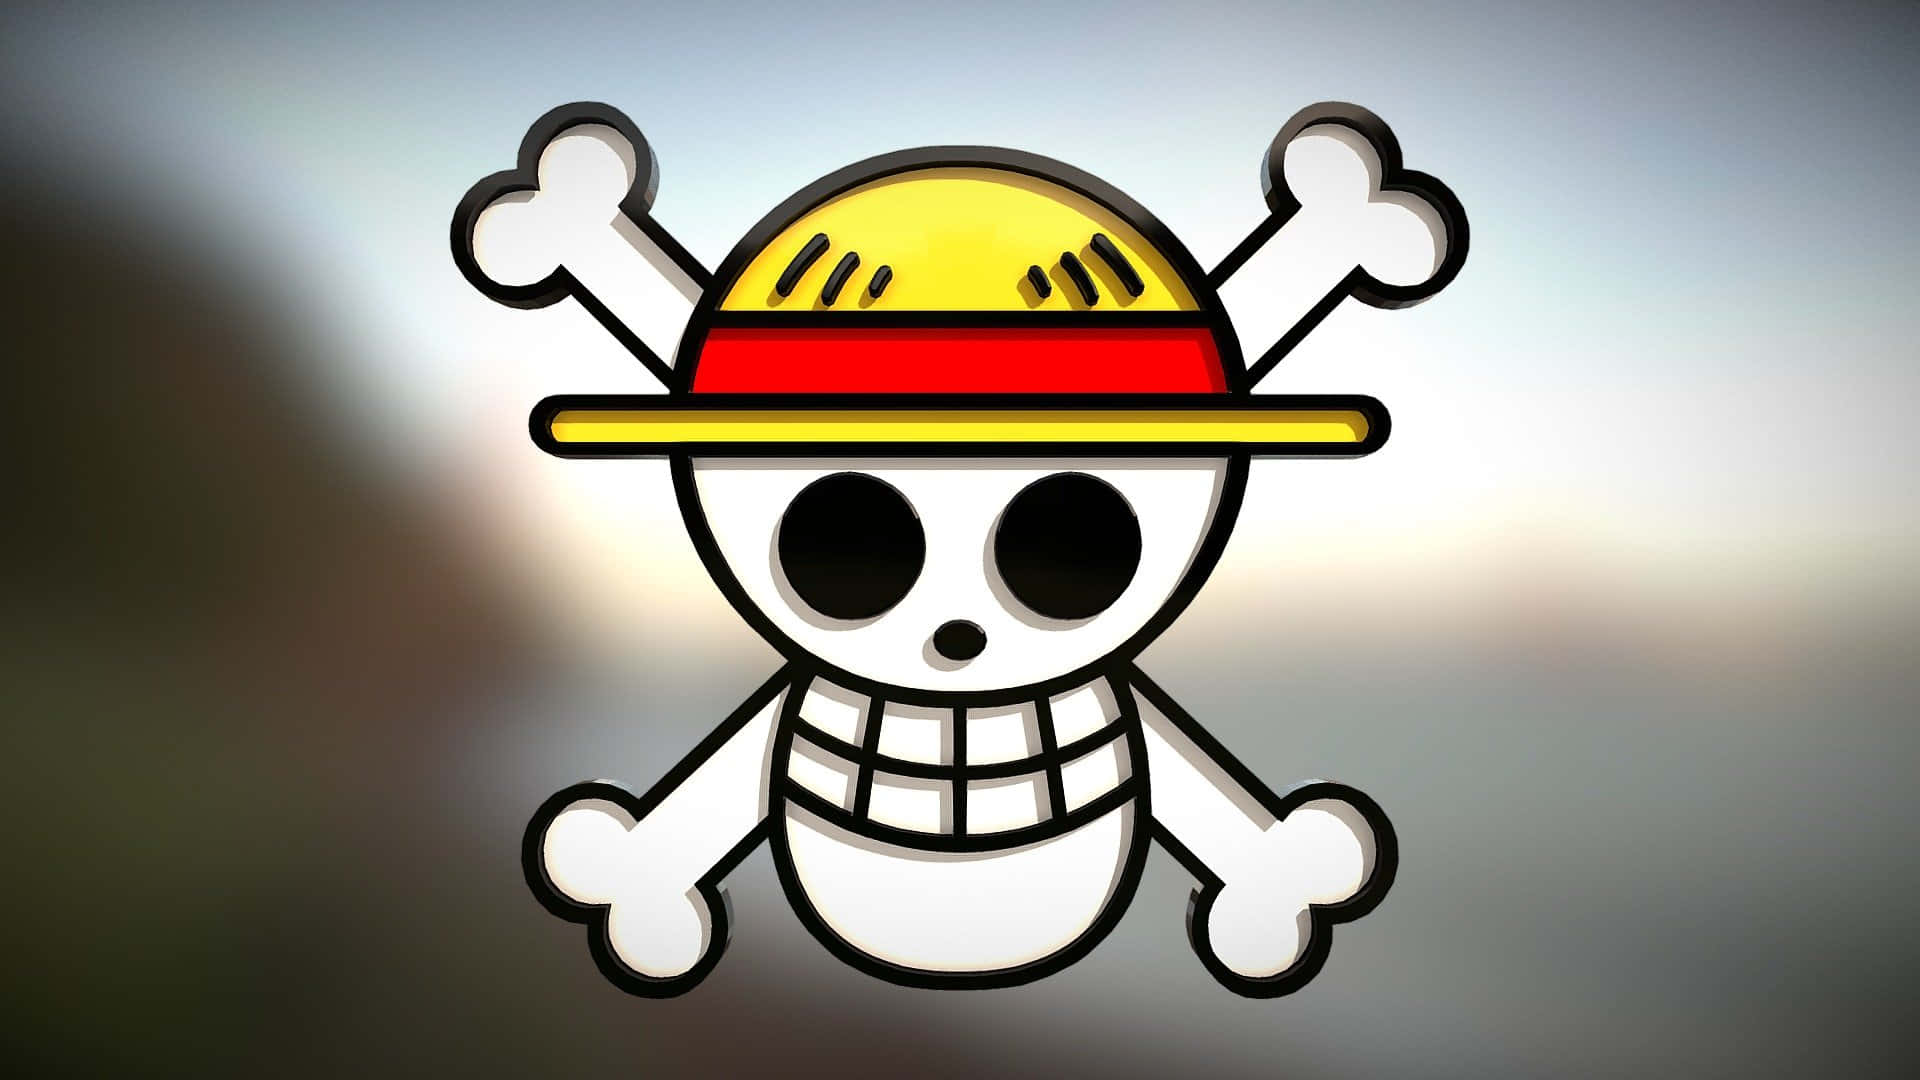 Listopara El Verano Con El Logo De Sombrero De Paja. Fondo de pantalla